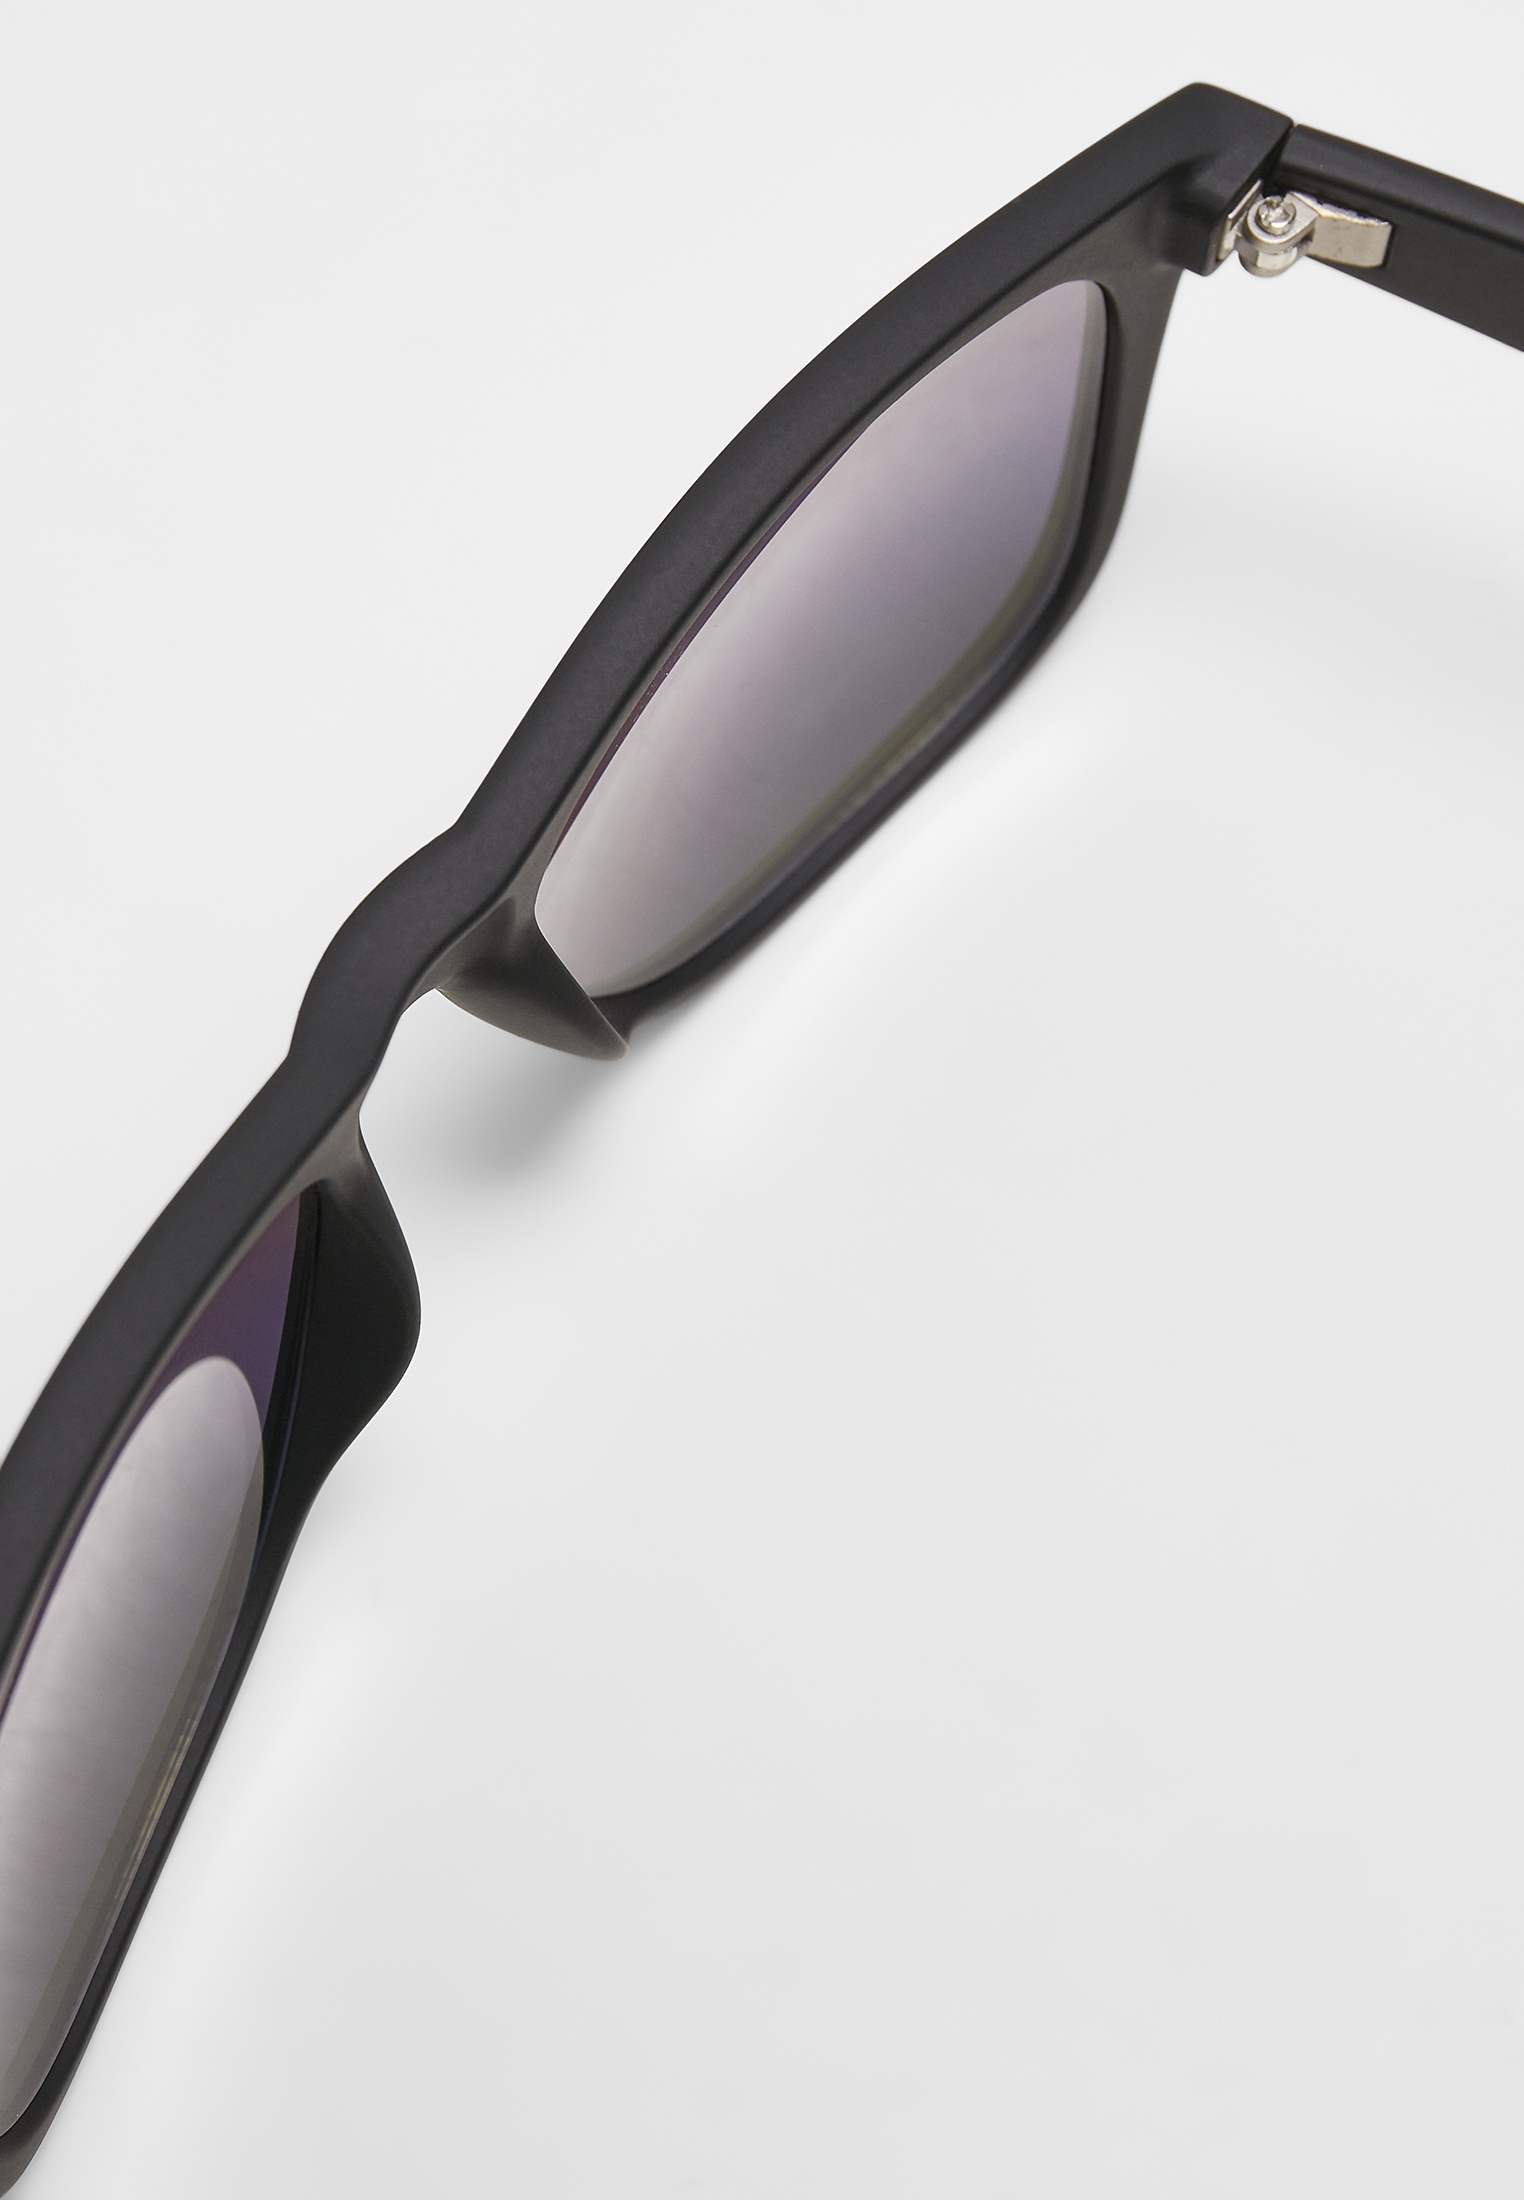 Sonnenbrillen Sunglasses Likoma Mirror UC in Farbe blk/pur